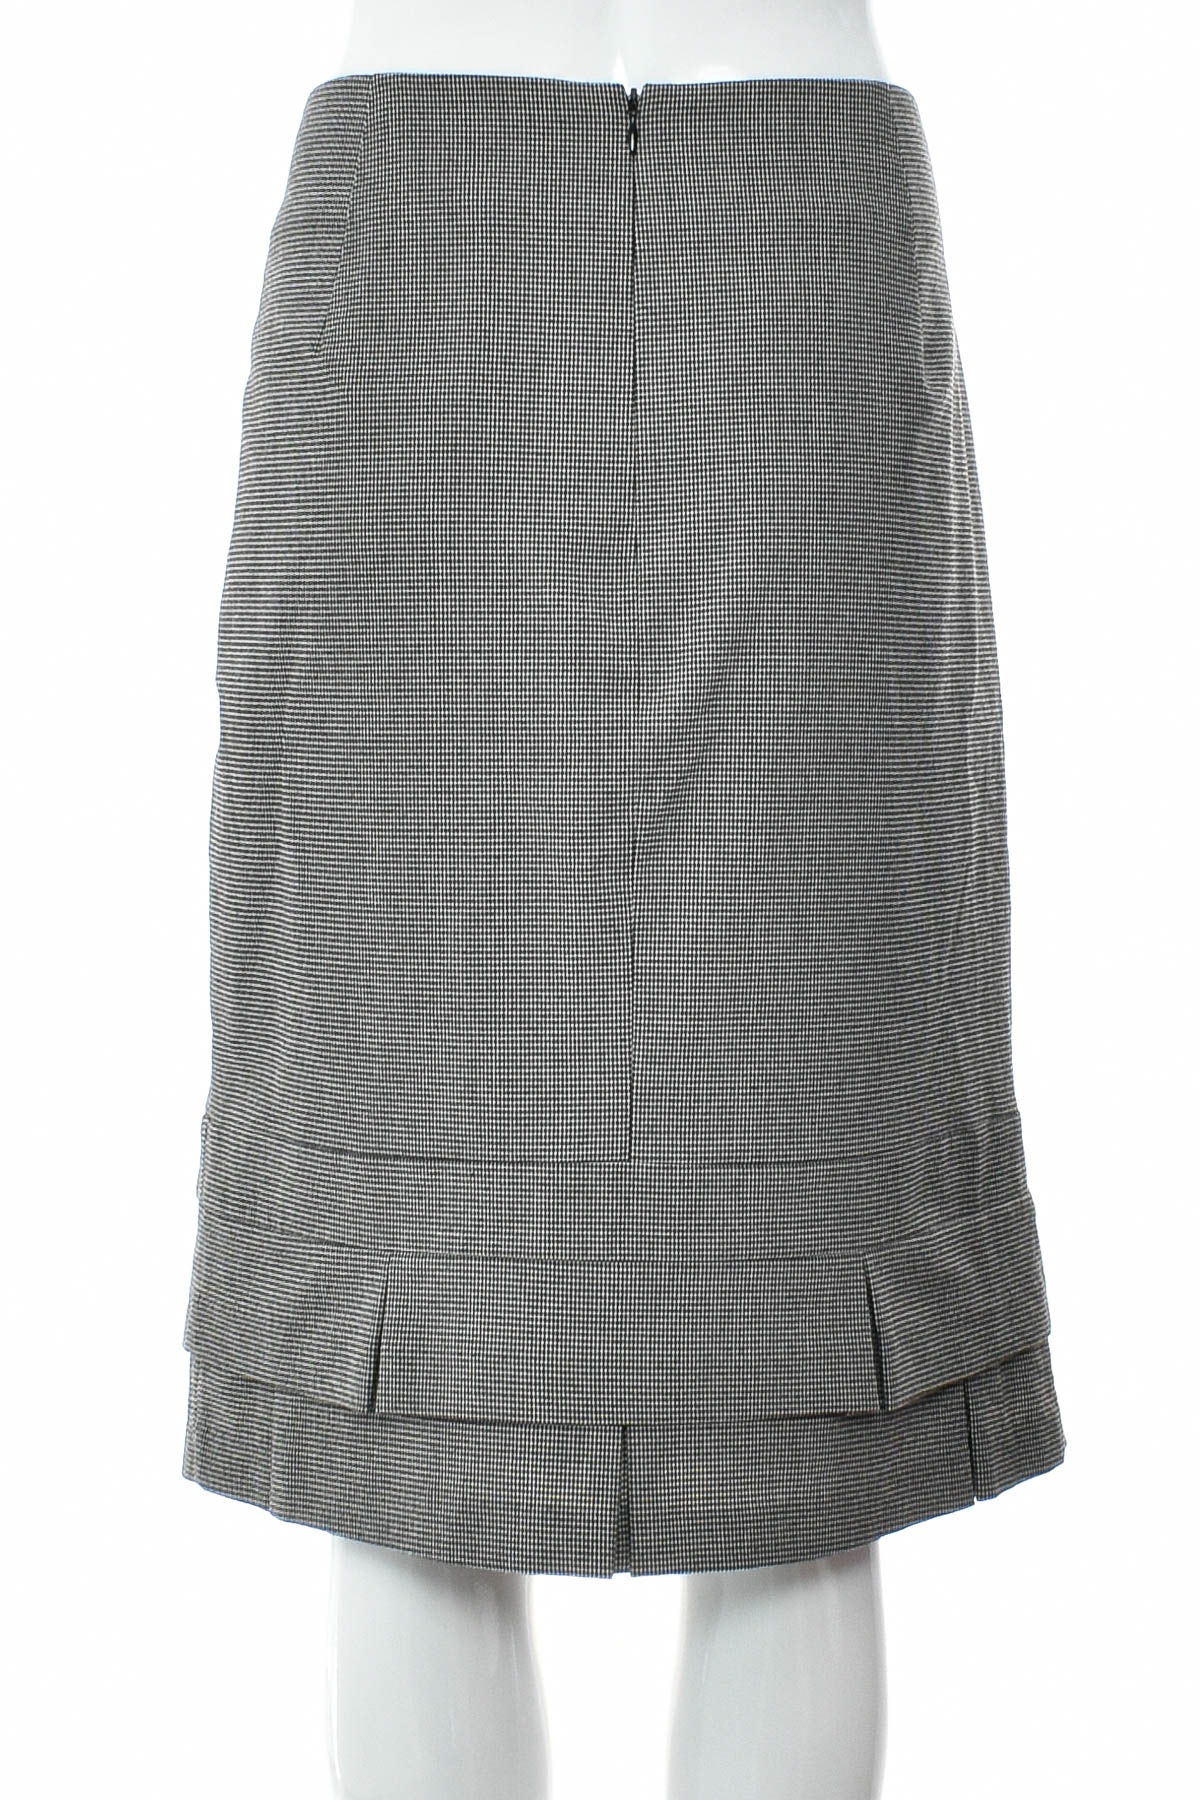 Skirt - Veronika Maine - 1